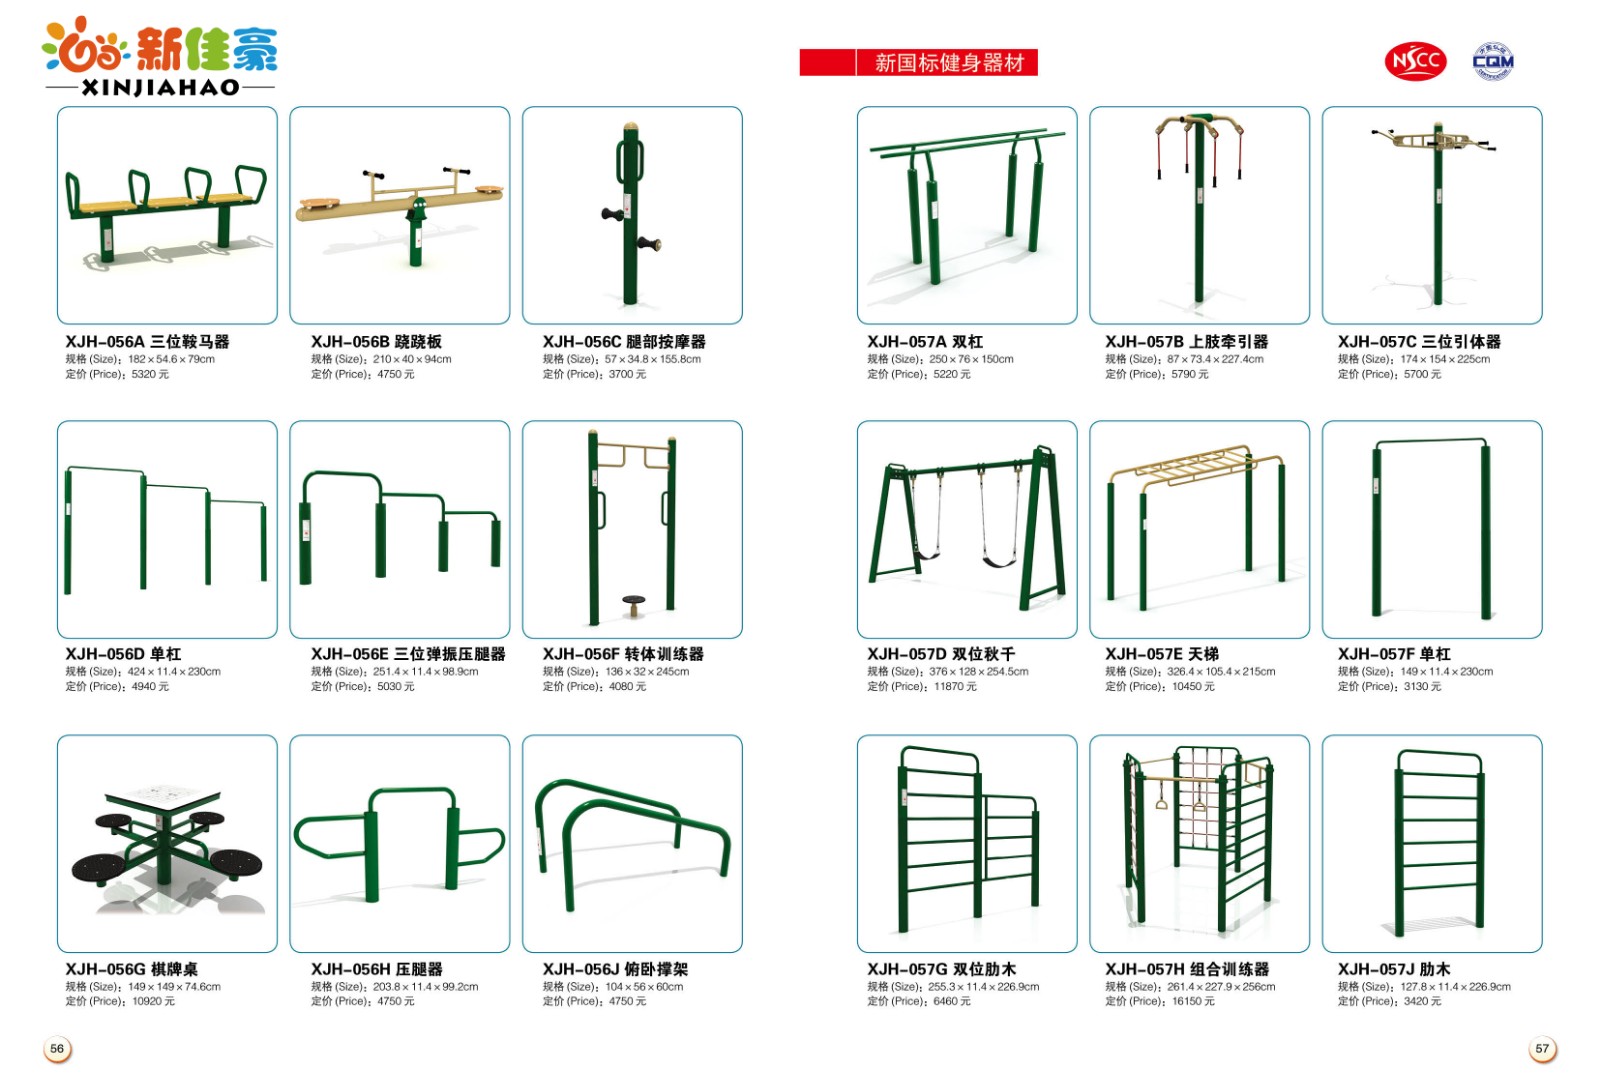 深圳社区健身器材户外健身器材小区健身器材厂家